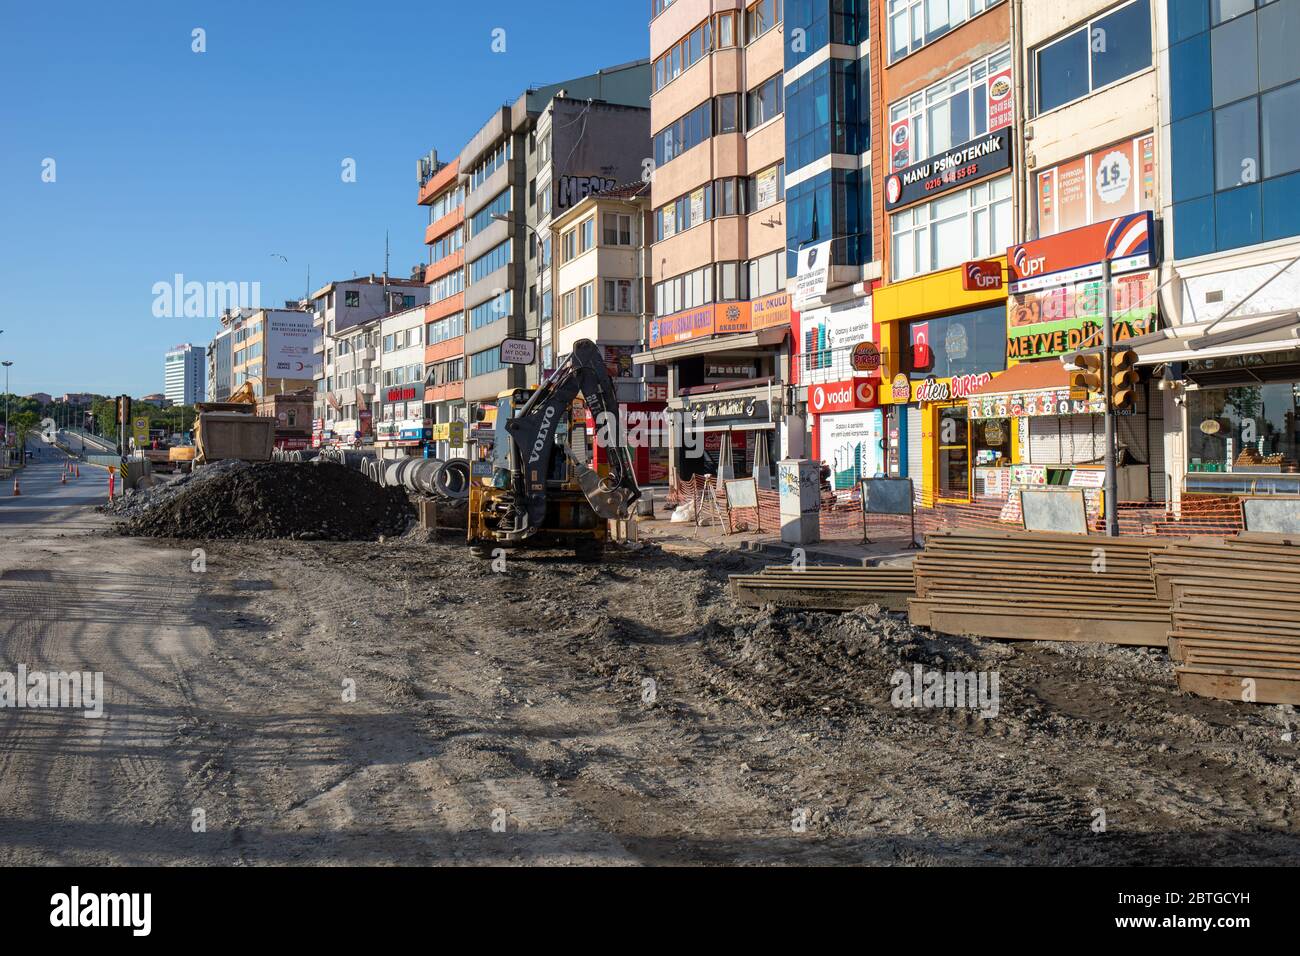 Travaux d'infrastructure de la municipalité de Kadikoy pendant le couvre-feu. Kadikoy est un quartier résidentiel sur la rive asiatique d’Istanbul. Banque D'Images